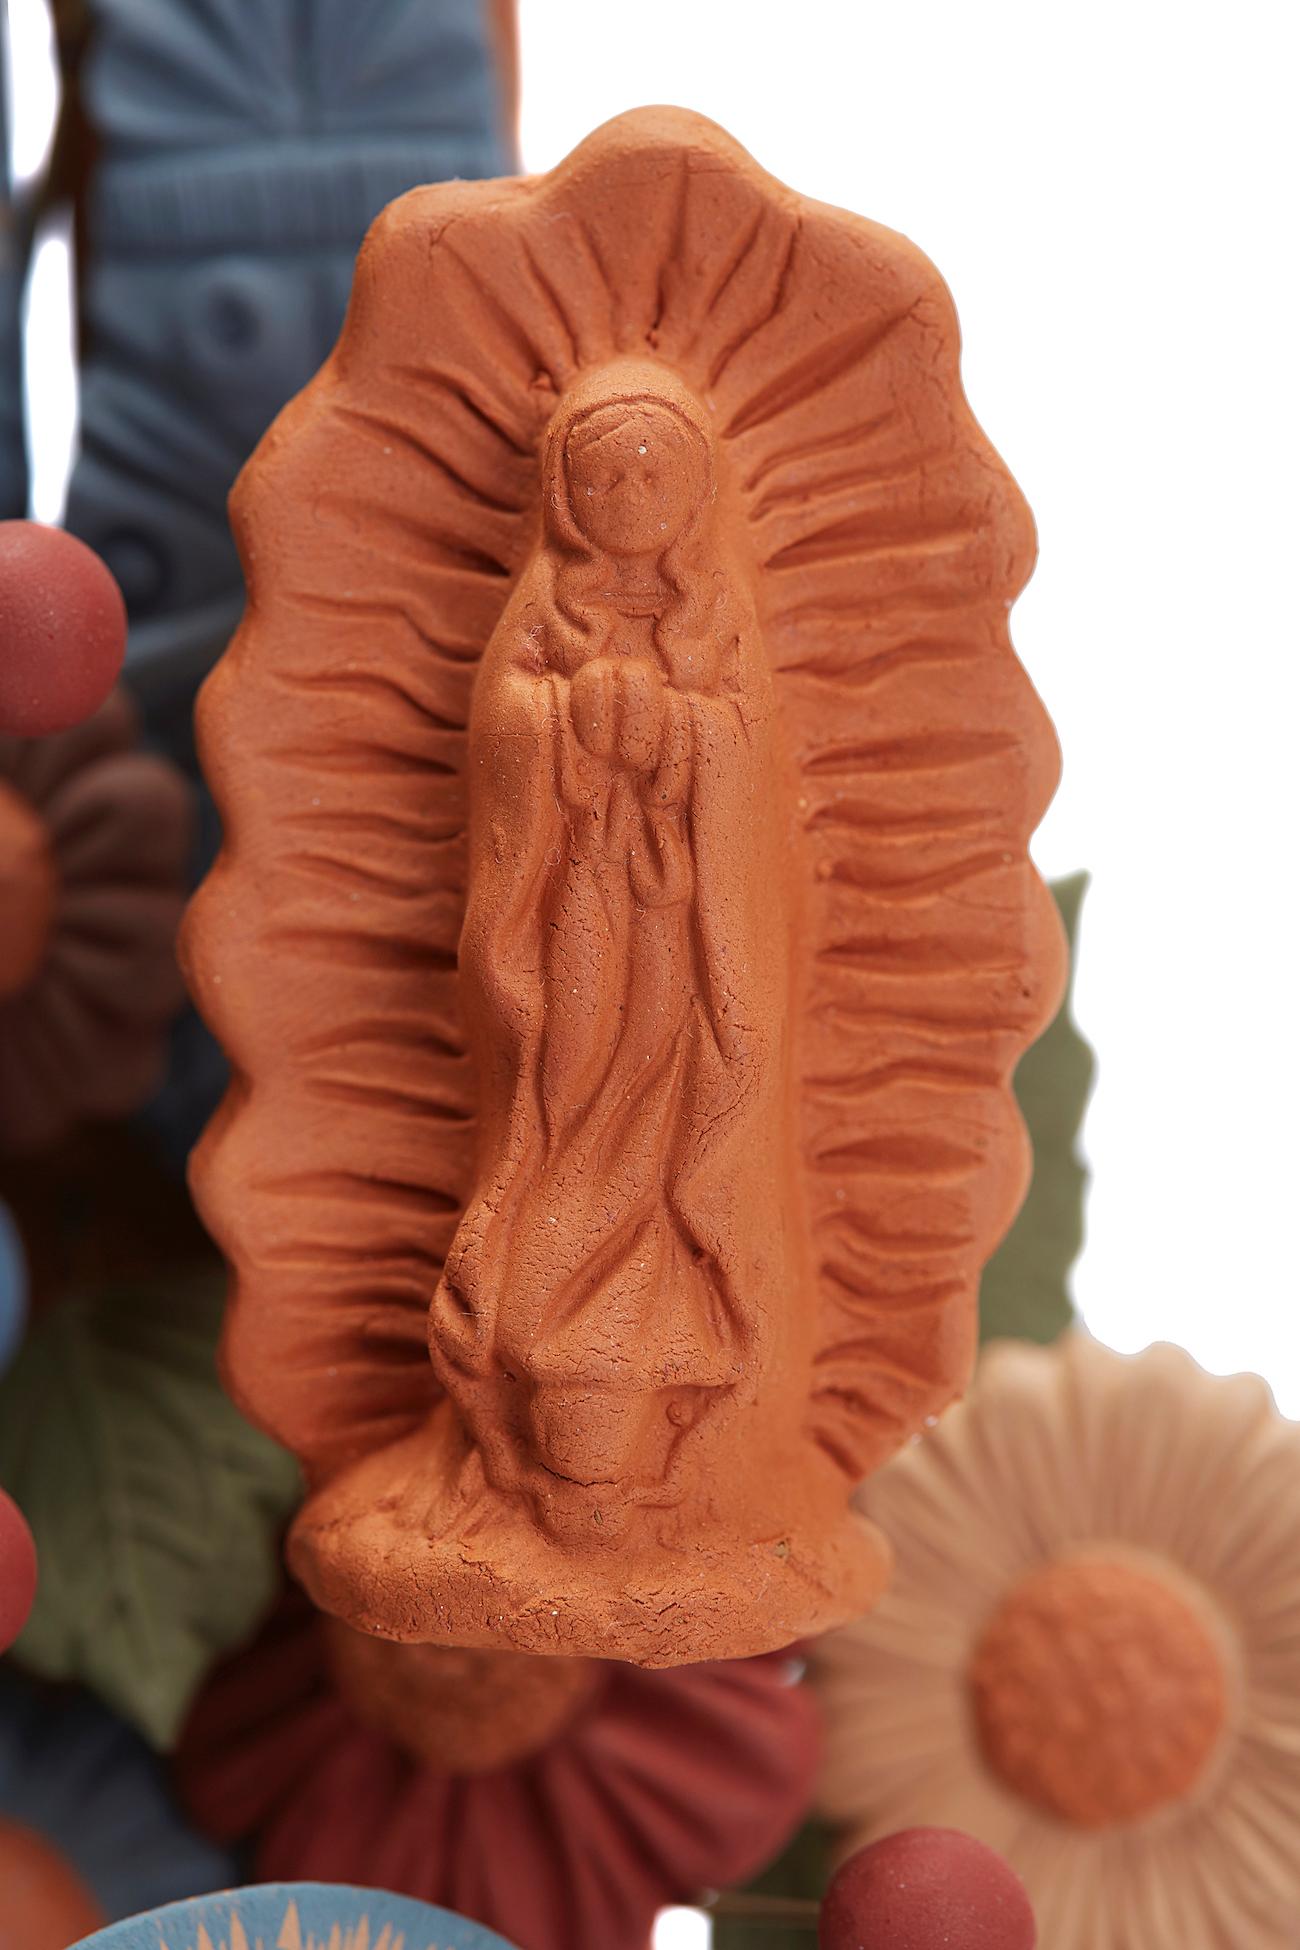 Arbol de Artesanias - Handicraft Tree  / Ceramics Mexican Folk Art Clay 4